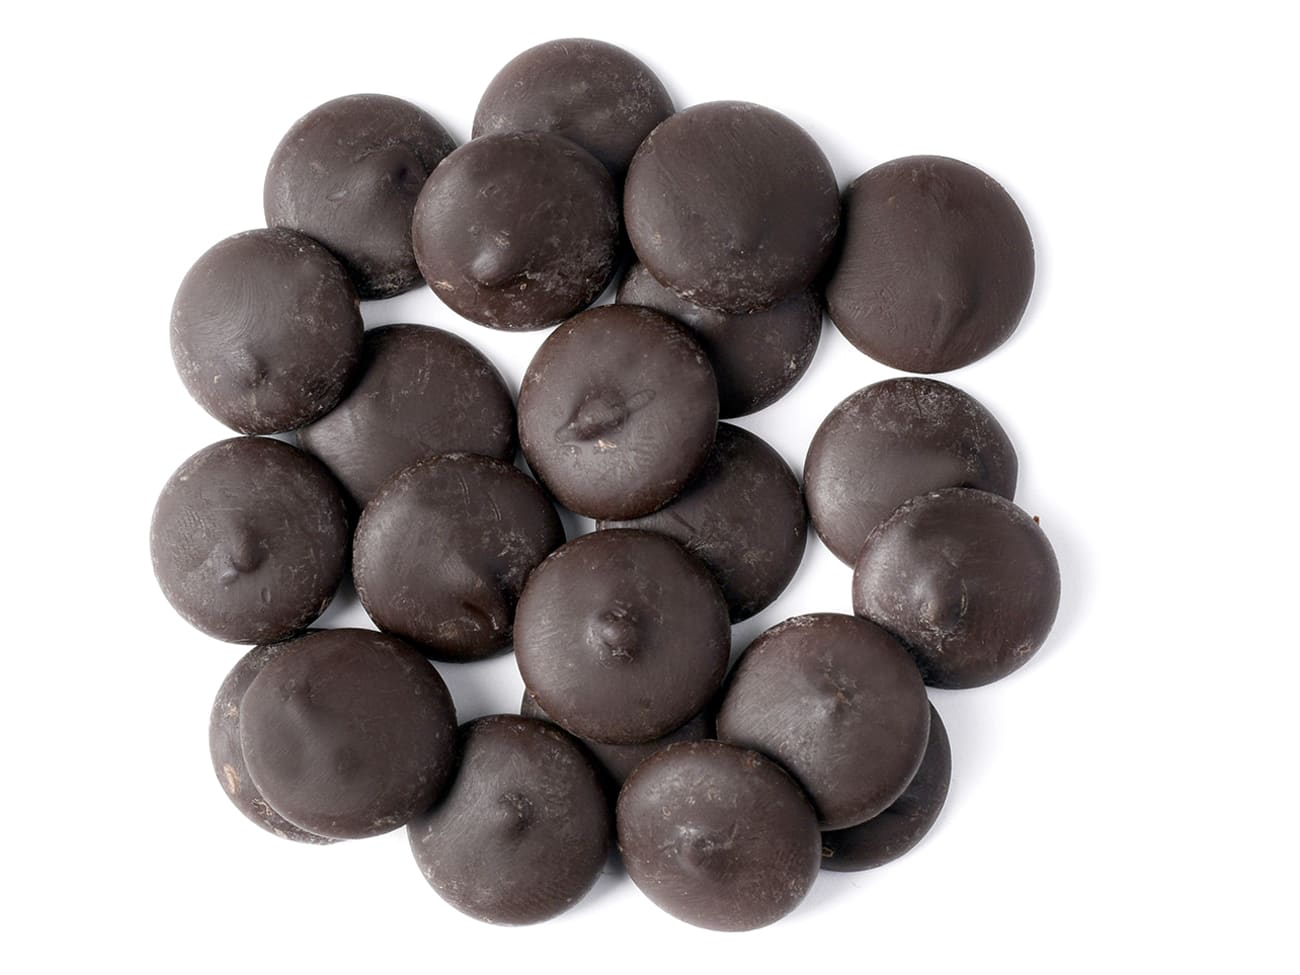 Chocolat en poudre 31.7% par 1 kg, Cacao Barry. - Cacao Barry